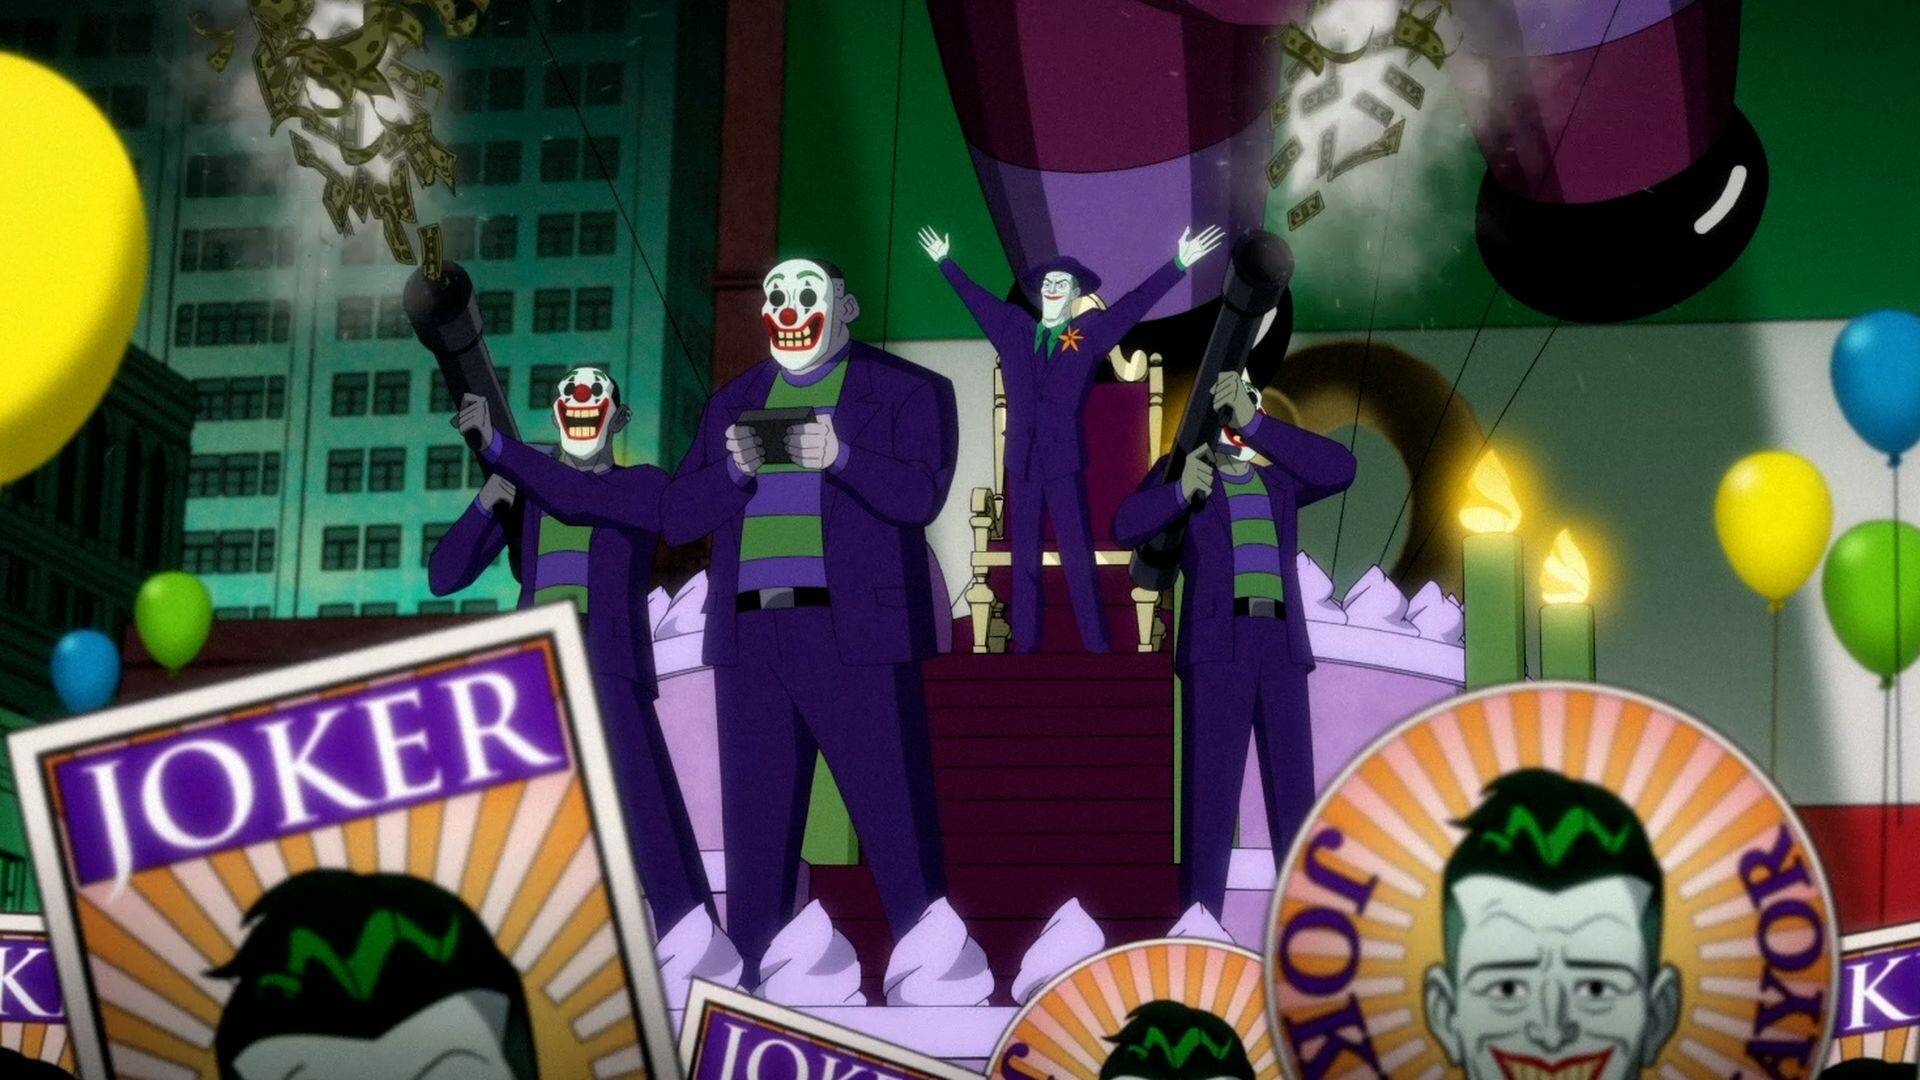 Harley Quinn S3E6 Joker: The Killing Vote